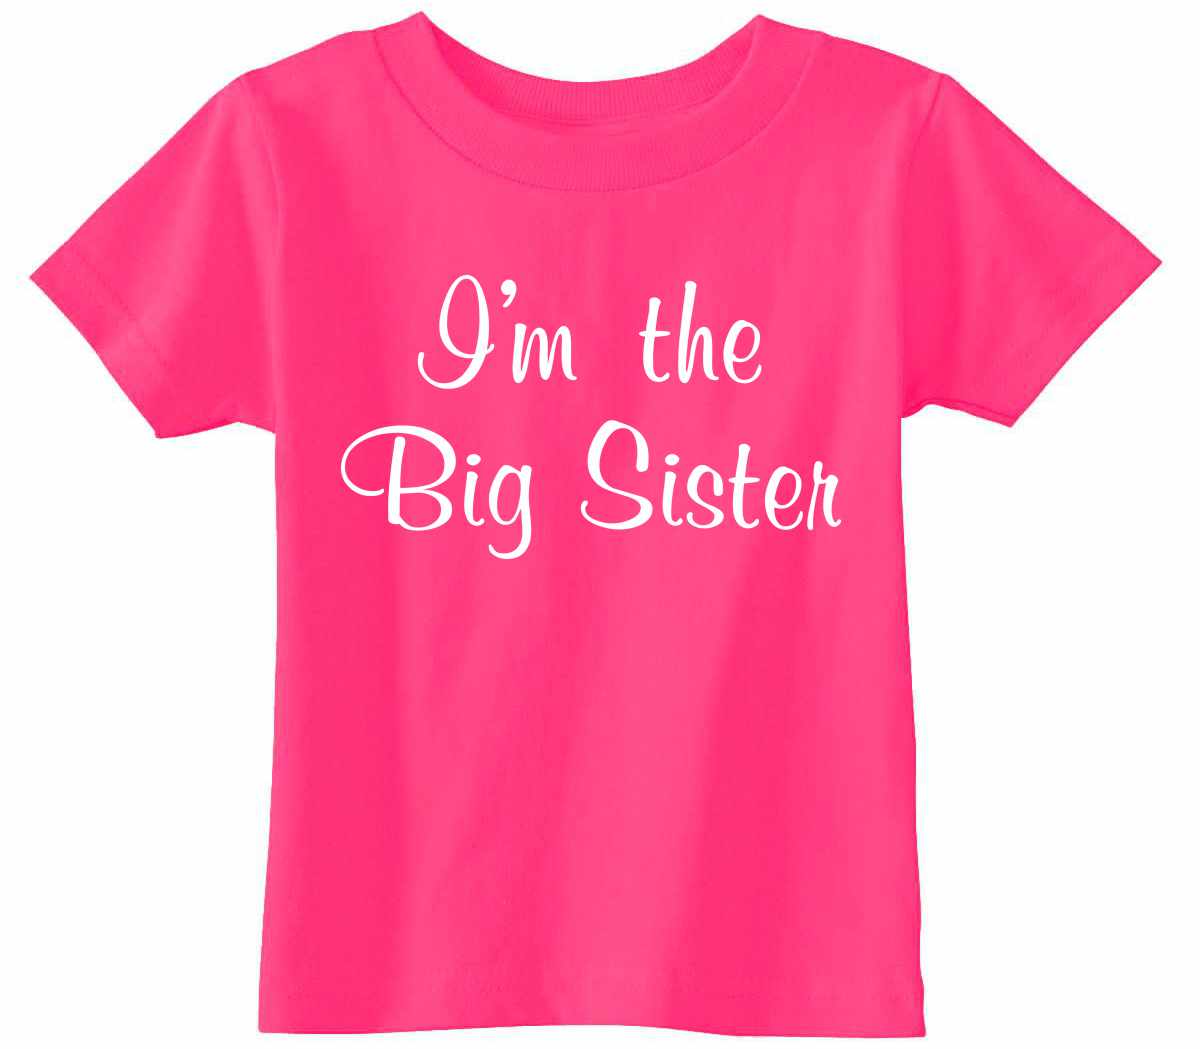 I'm the Big Sister on Infant-Toddler T-Shirt (#1245-7)